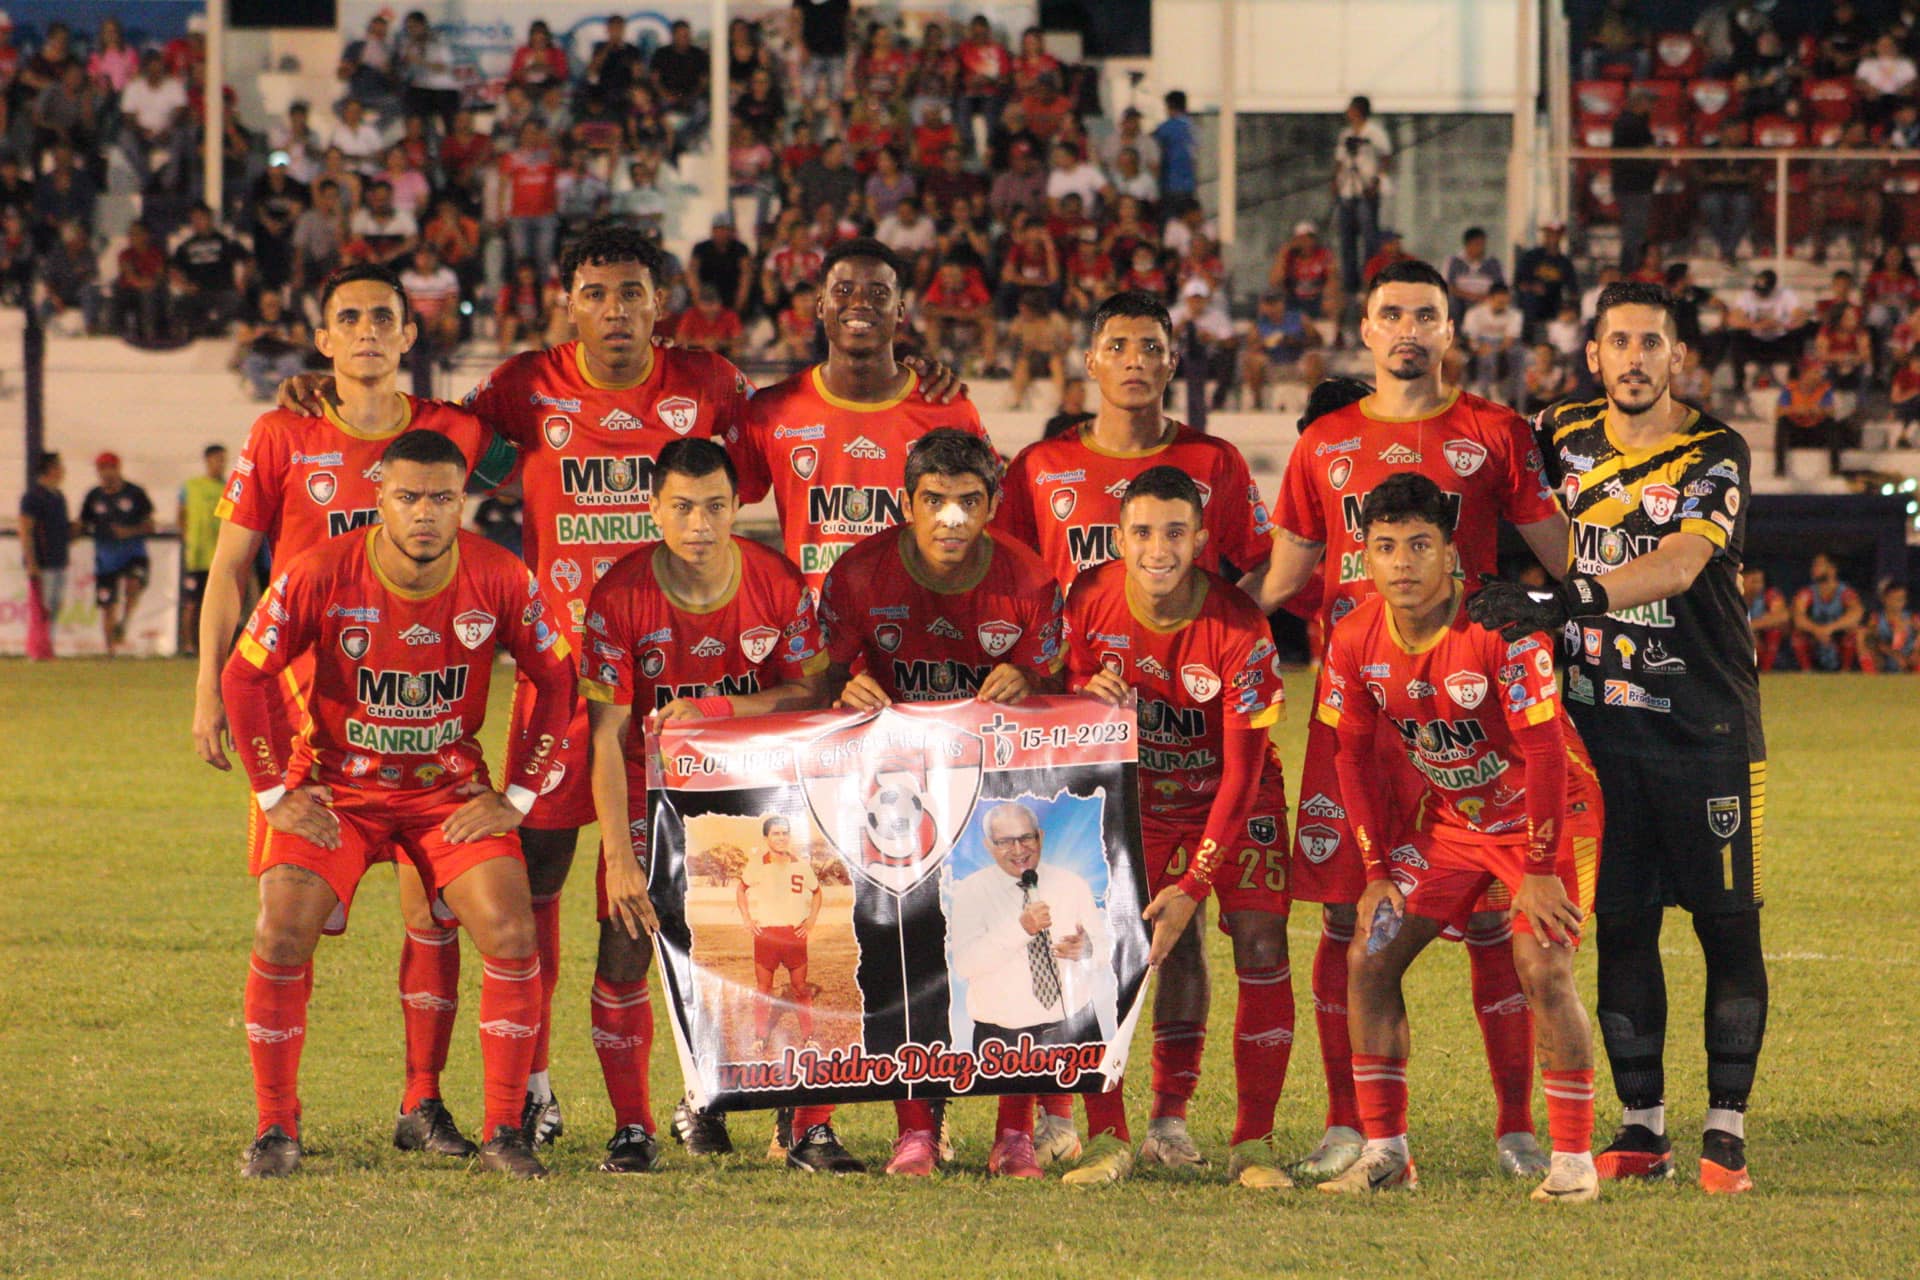 Colegiales y Sacachispas definen el último equipo que se suma a la Primera  Nacional 2022